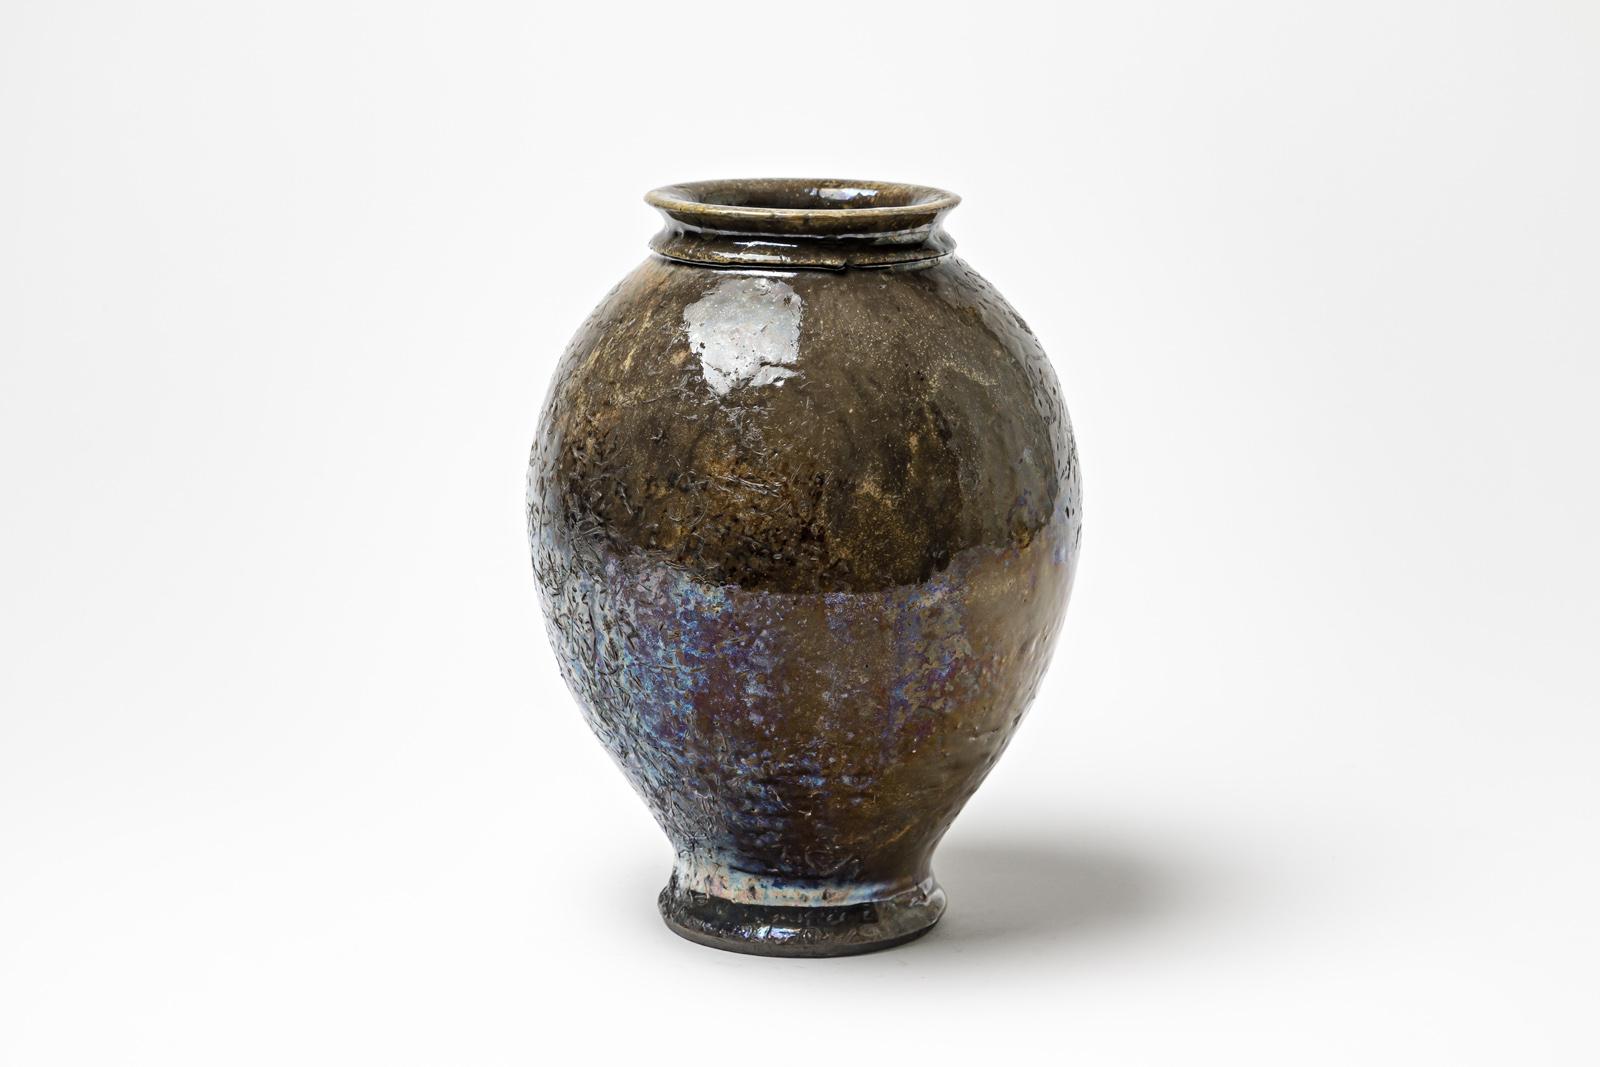 Vase aus braun glasierter Keramik mit metallischen Akzenten von Gisèle Buthod Garçon. Raku gebrannt. Künstlermonogramm unter dem Sockel. CIRCA 1980-1990.
H : 10,6' x 7,1' Zoll.
